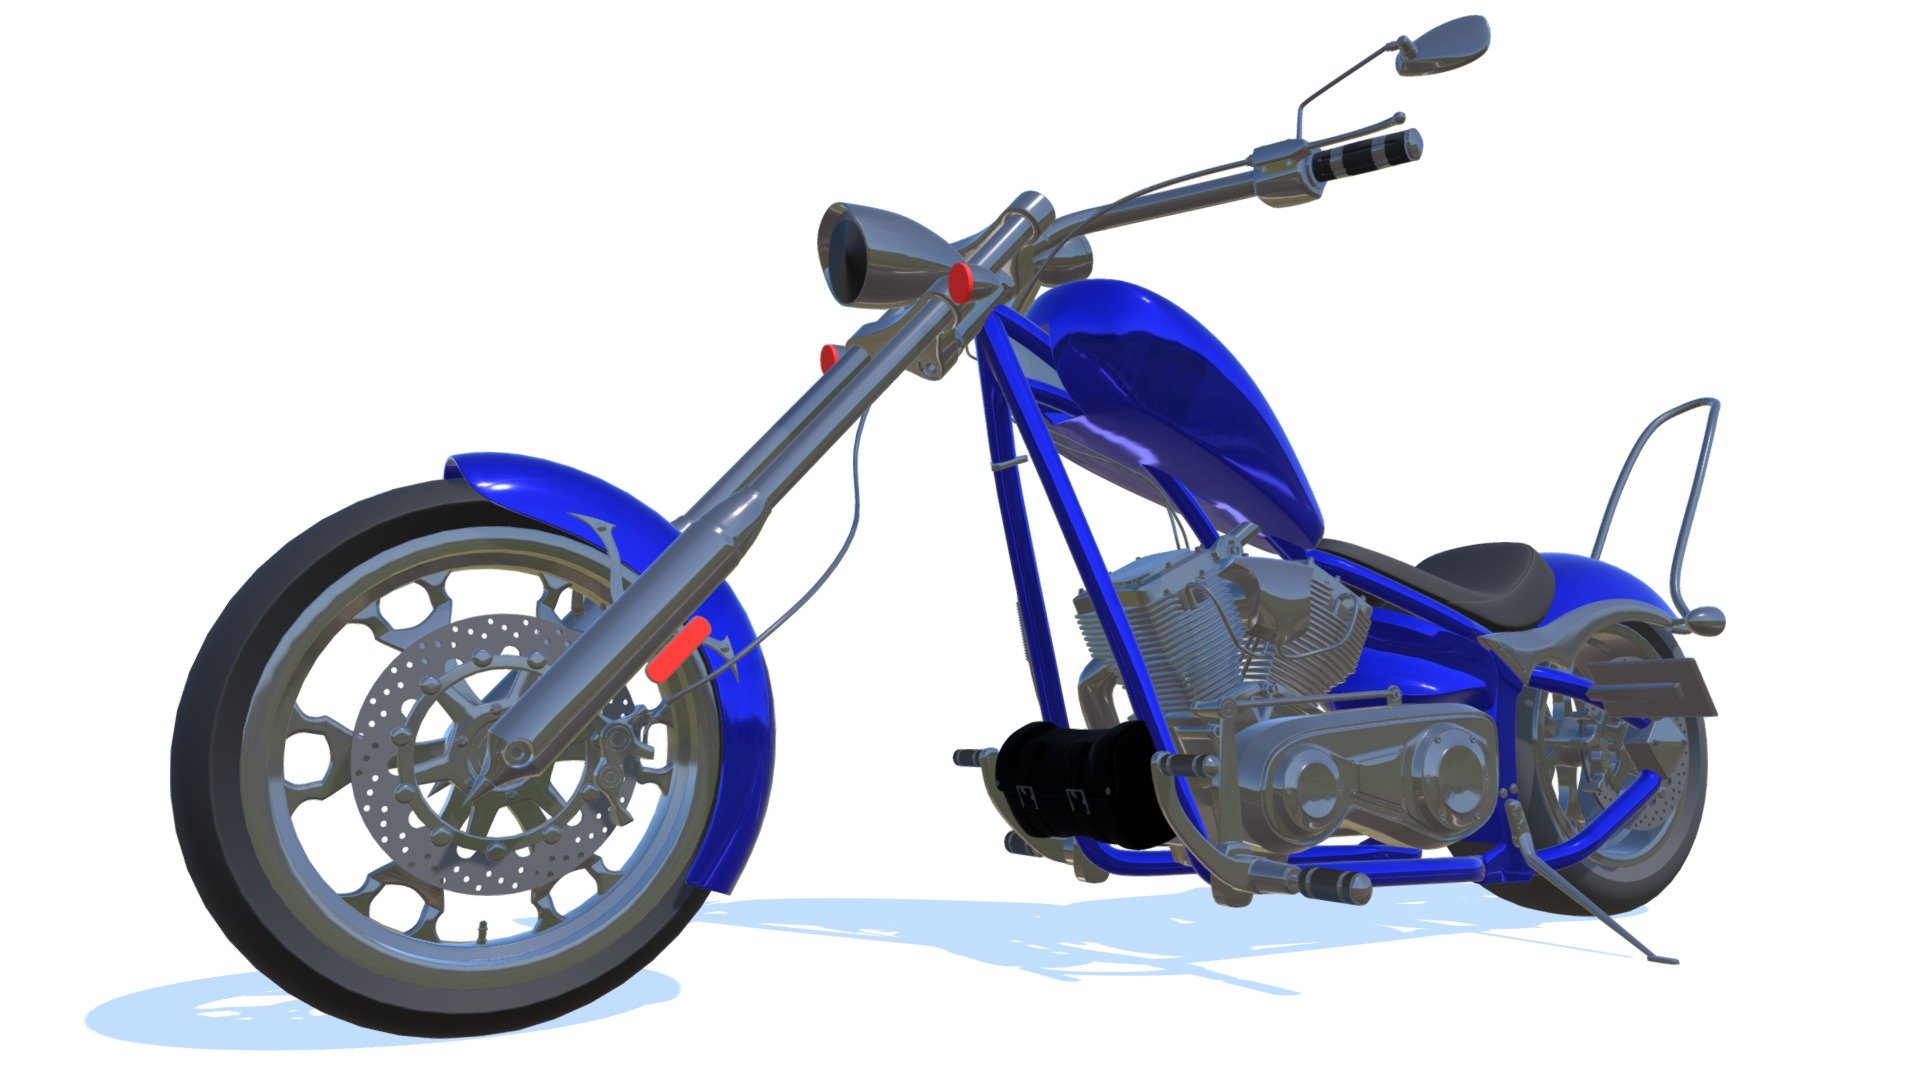 Detailed 3d model of Big Dog motorcycle.

Included Formats:

3ds Max

3D Studio

Lightwave

OBJ

Softimage - Big Dog Motorcycle - Buy Royalty Free 3D model by 3DHorse 3d model